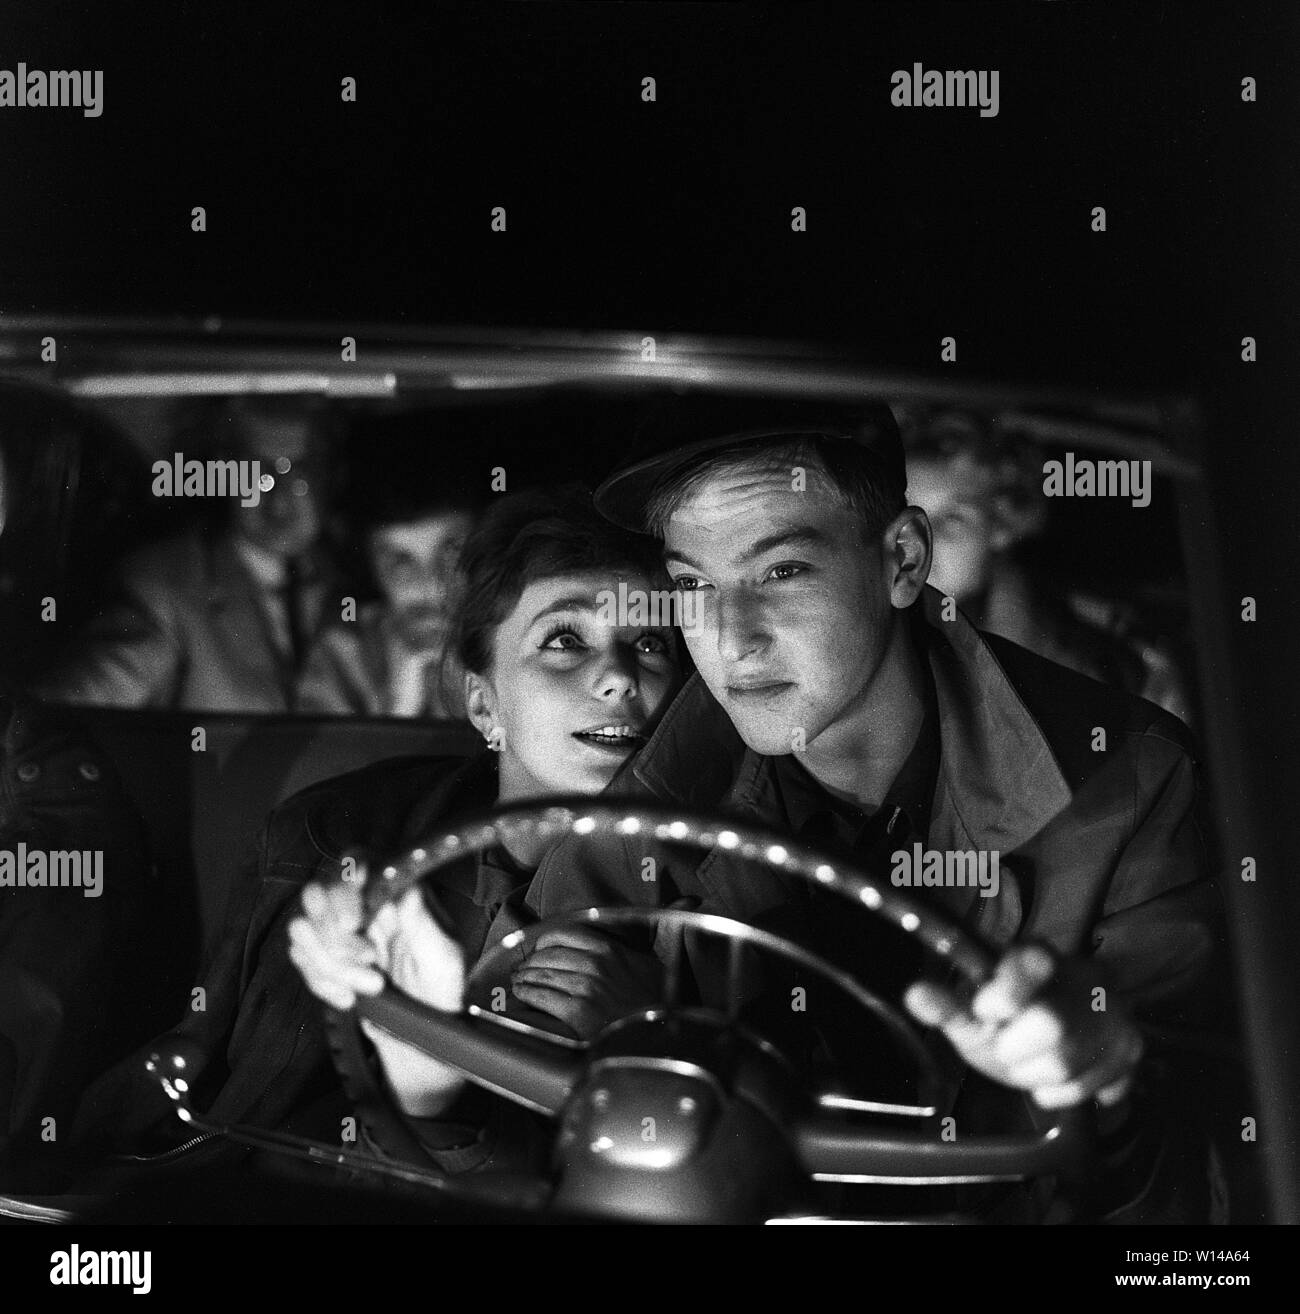 Das Fahren in den 1950er Jahren. Ein junges Paar im Fahrersitz. Er ist auf der Fahrt in die dunkle Nacht und seine Augen sind auf den Verkehr konzentrieren. Sie ist mehr an ihm interessiert und sitzt so nahe zu ihm, als Sie kann. Schweden 1959. ref BV 100-2 Stockfoto